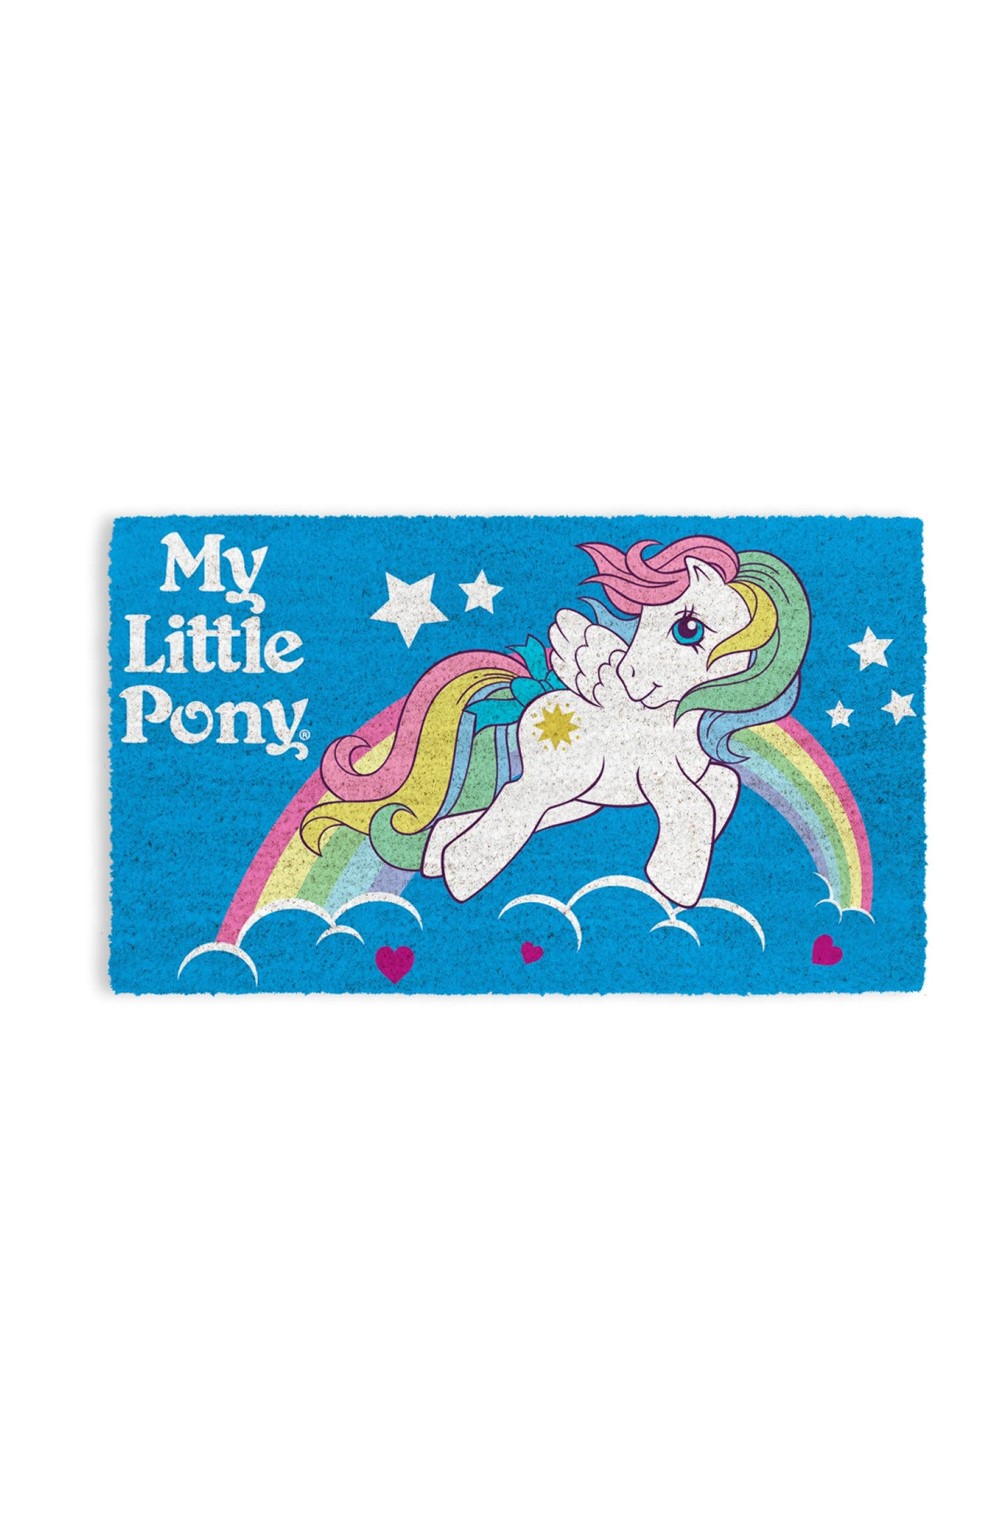 My Little Pony Doormat